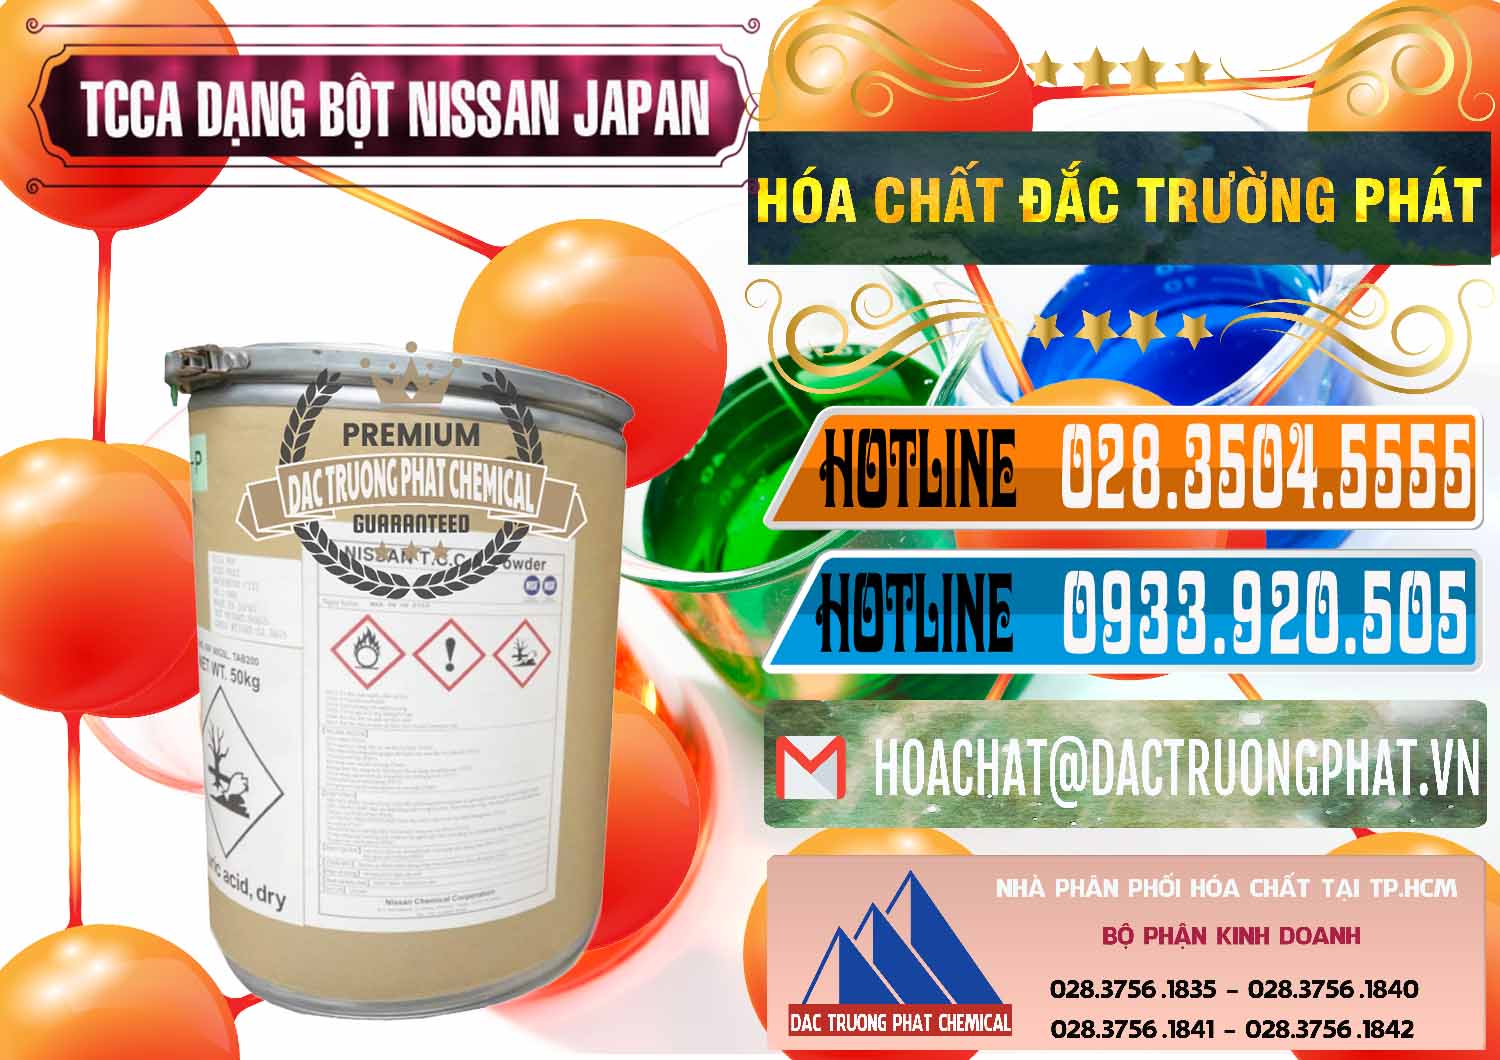 Công ty nhập khẩu - bán TCCA - Acid Trichloroisocyanuric 90% Dạng Bột Nissan Nhật Bản Japan - 0375 - Nơi chuyên kinh doanh - cung cấp hóa chất tại TP.HCM - stmp.net